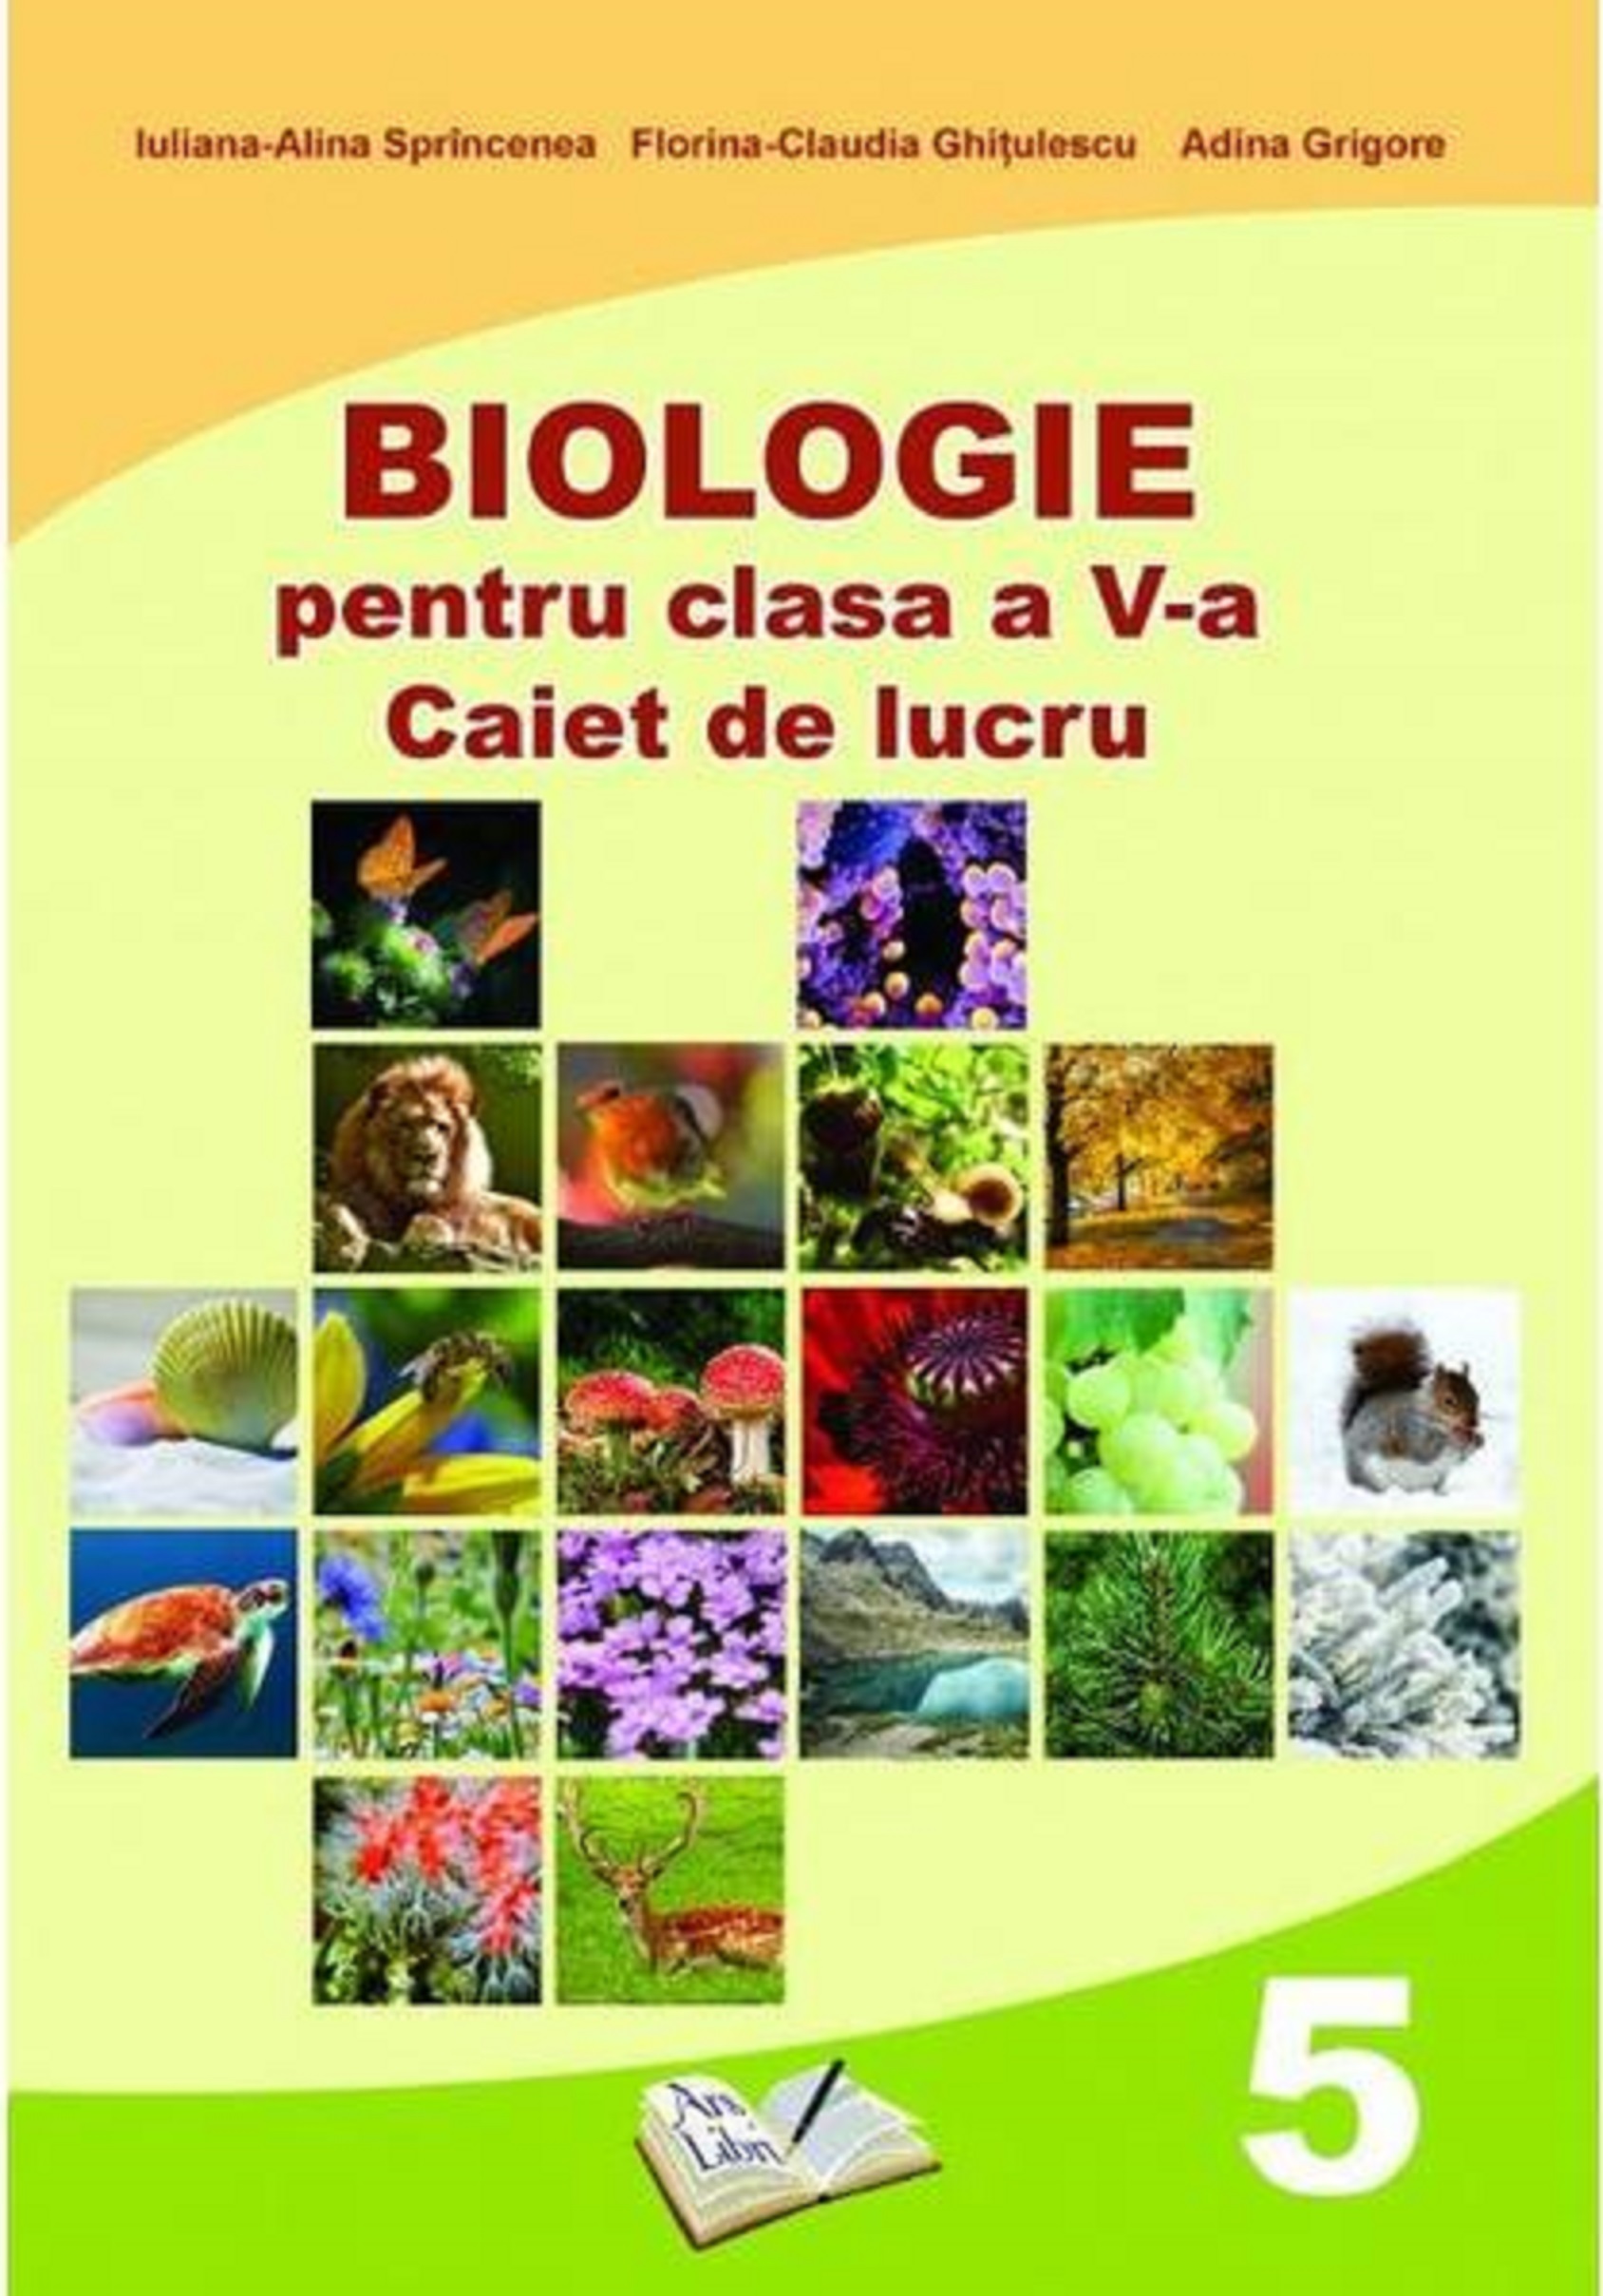 Biologie - Caiet de lucru, clasa a V-a | Iuliana-Alina Sprincenea, Florina-Claudia Ghitulescu